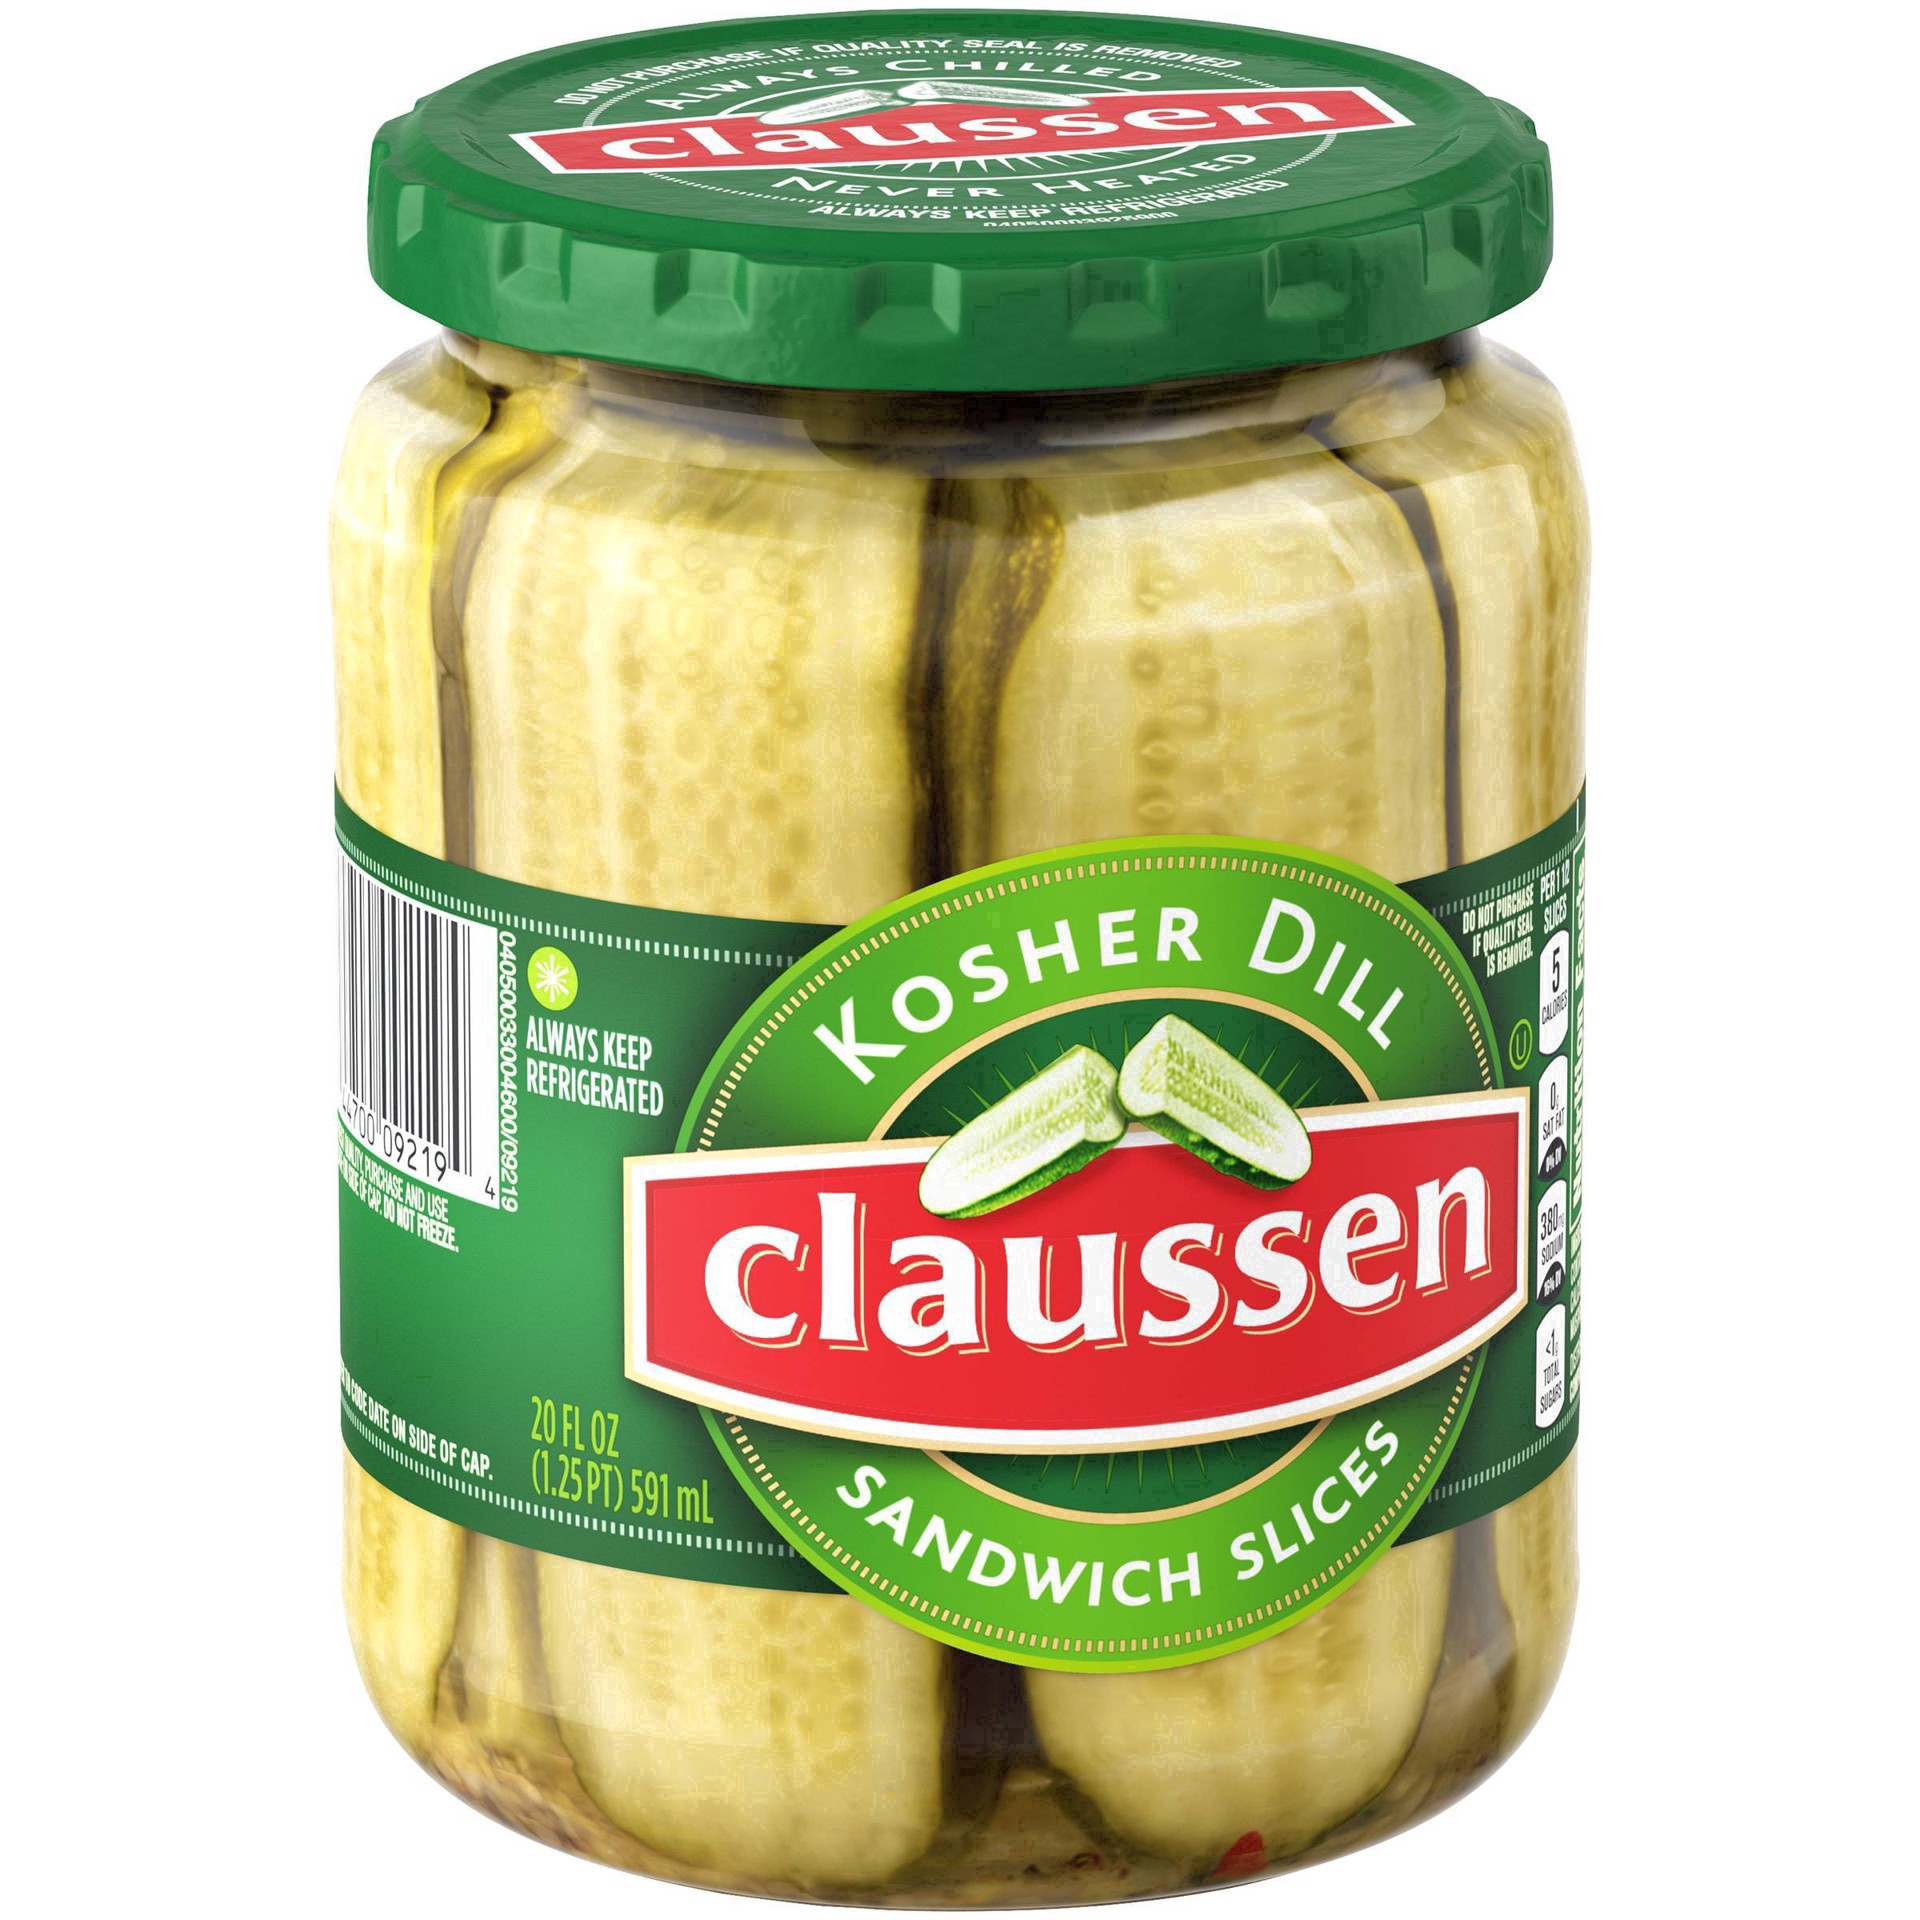 slide 116 of 144, Claussen Kosher Dill Pickle Sandwich Slices, 20 fl. oz. Jar, 20 fl oz